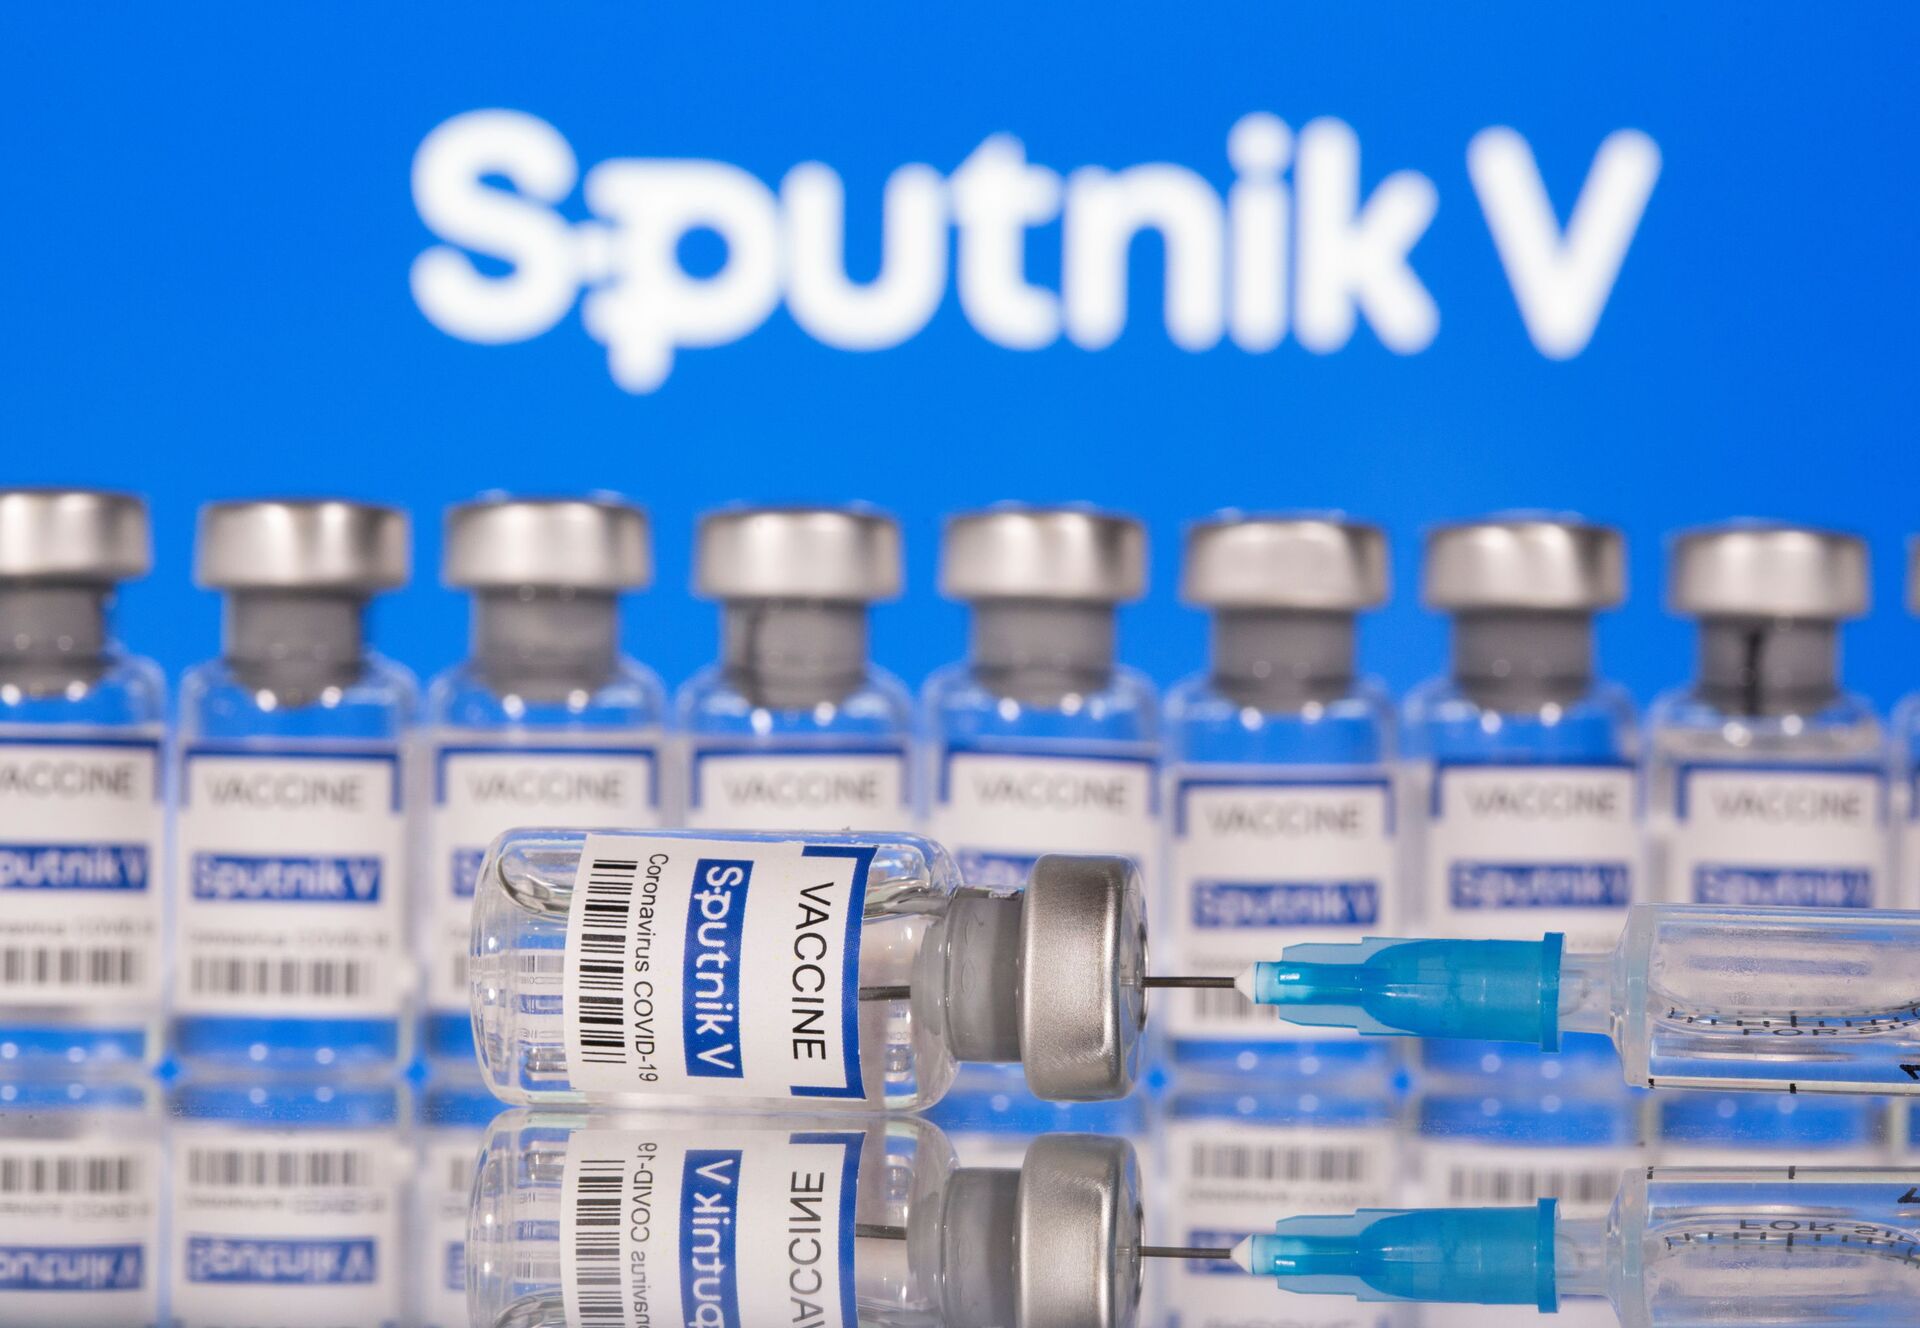 Índia se torna o 60º país a aprovar a vacina Sputnik V contra a COVID-19 - Sputnik Brasil, 1920, 12.04.2021